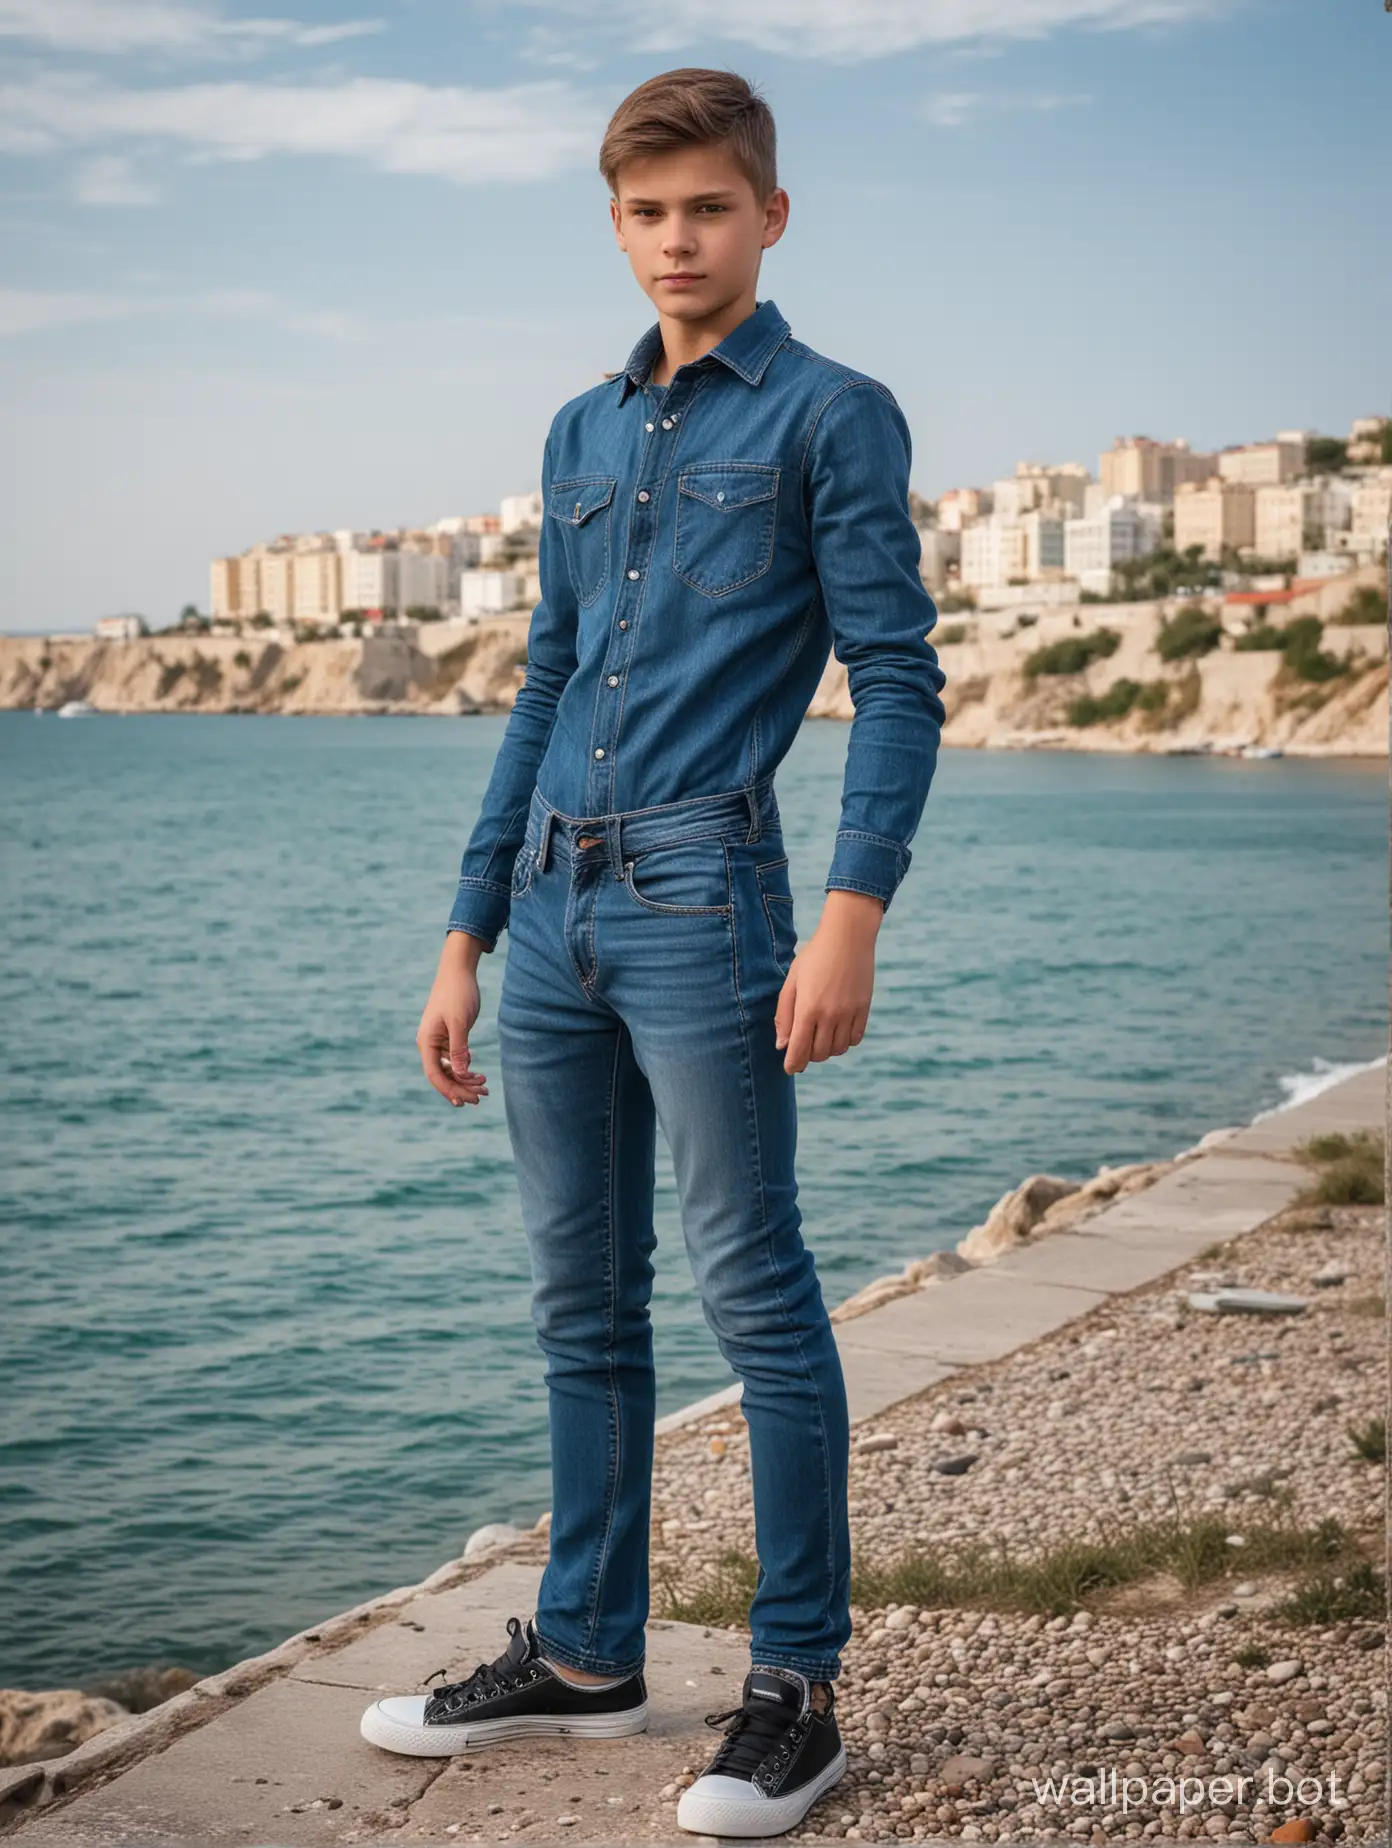 русский школьник 13 лет в Крыму на фоне моря, в полный рост, динамичные позы, люди и строения на заднем плане, обтягивающие джинсы, попка, вид сзади, облегающие джинсы